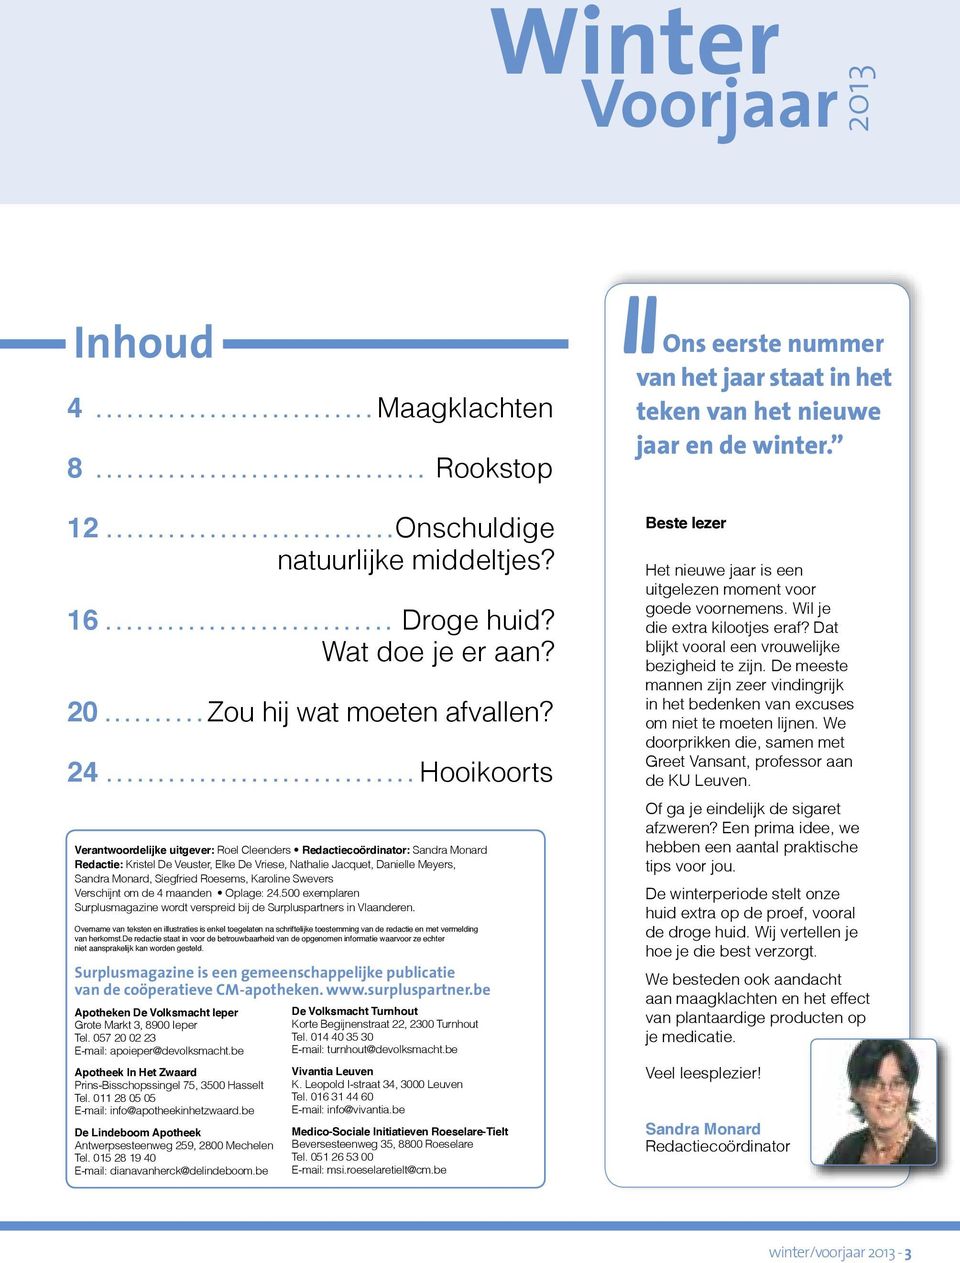 Siegfried Roesems, Karoline Swevers Verschijnt om de 4 maanden Oplage: 24.500 exemplaren Surplusmagazine wordt verspreid bij de Surpluspartners in Vlaanderen.